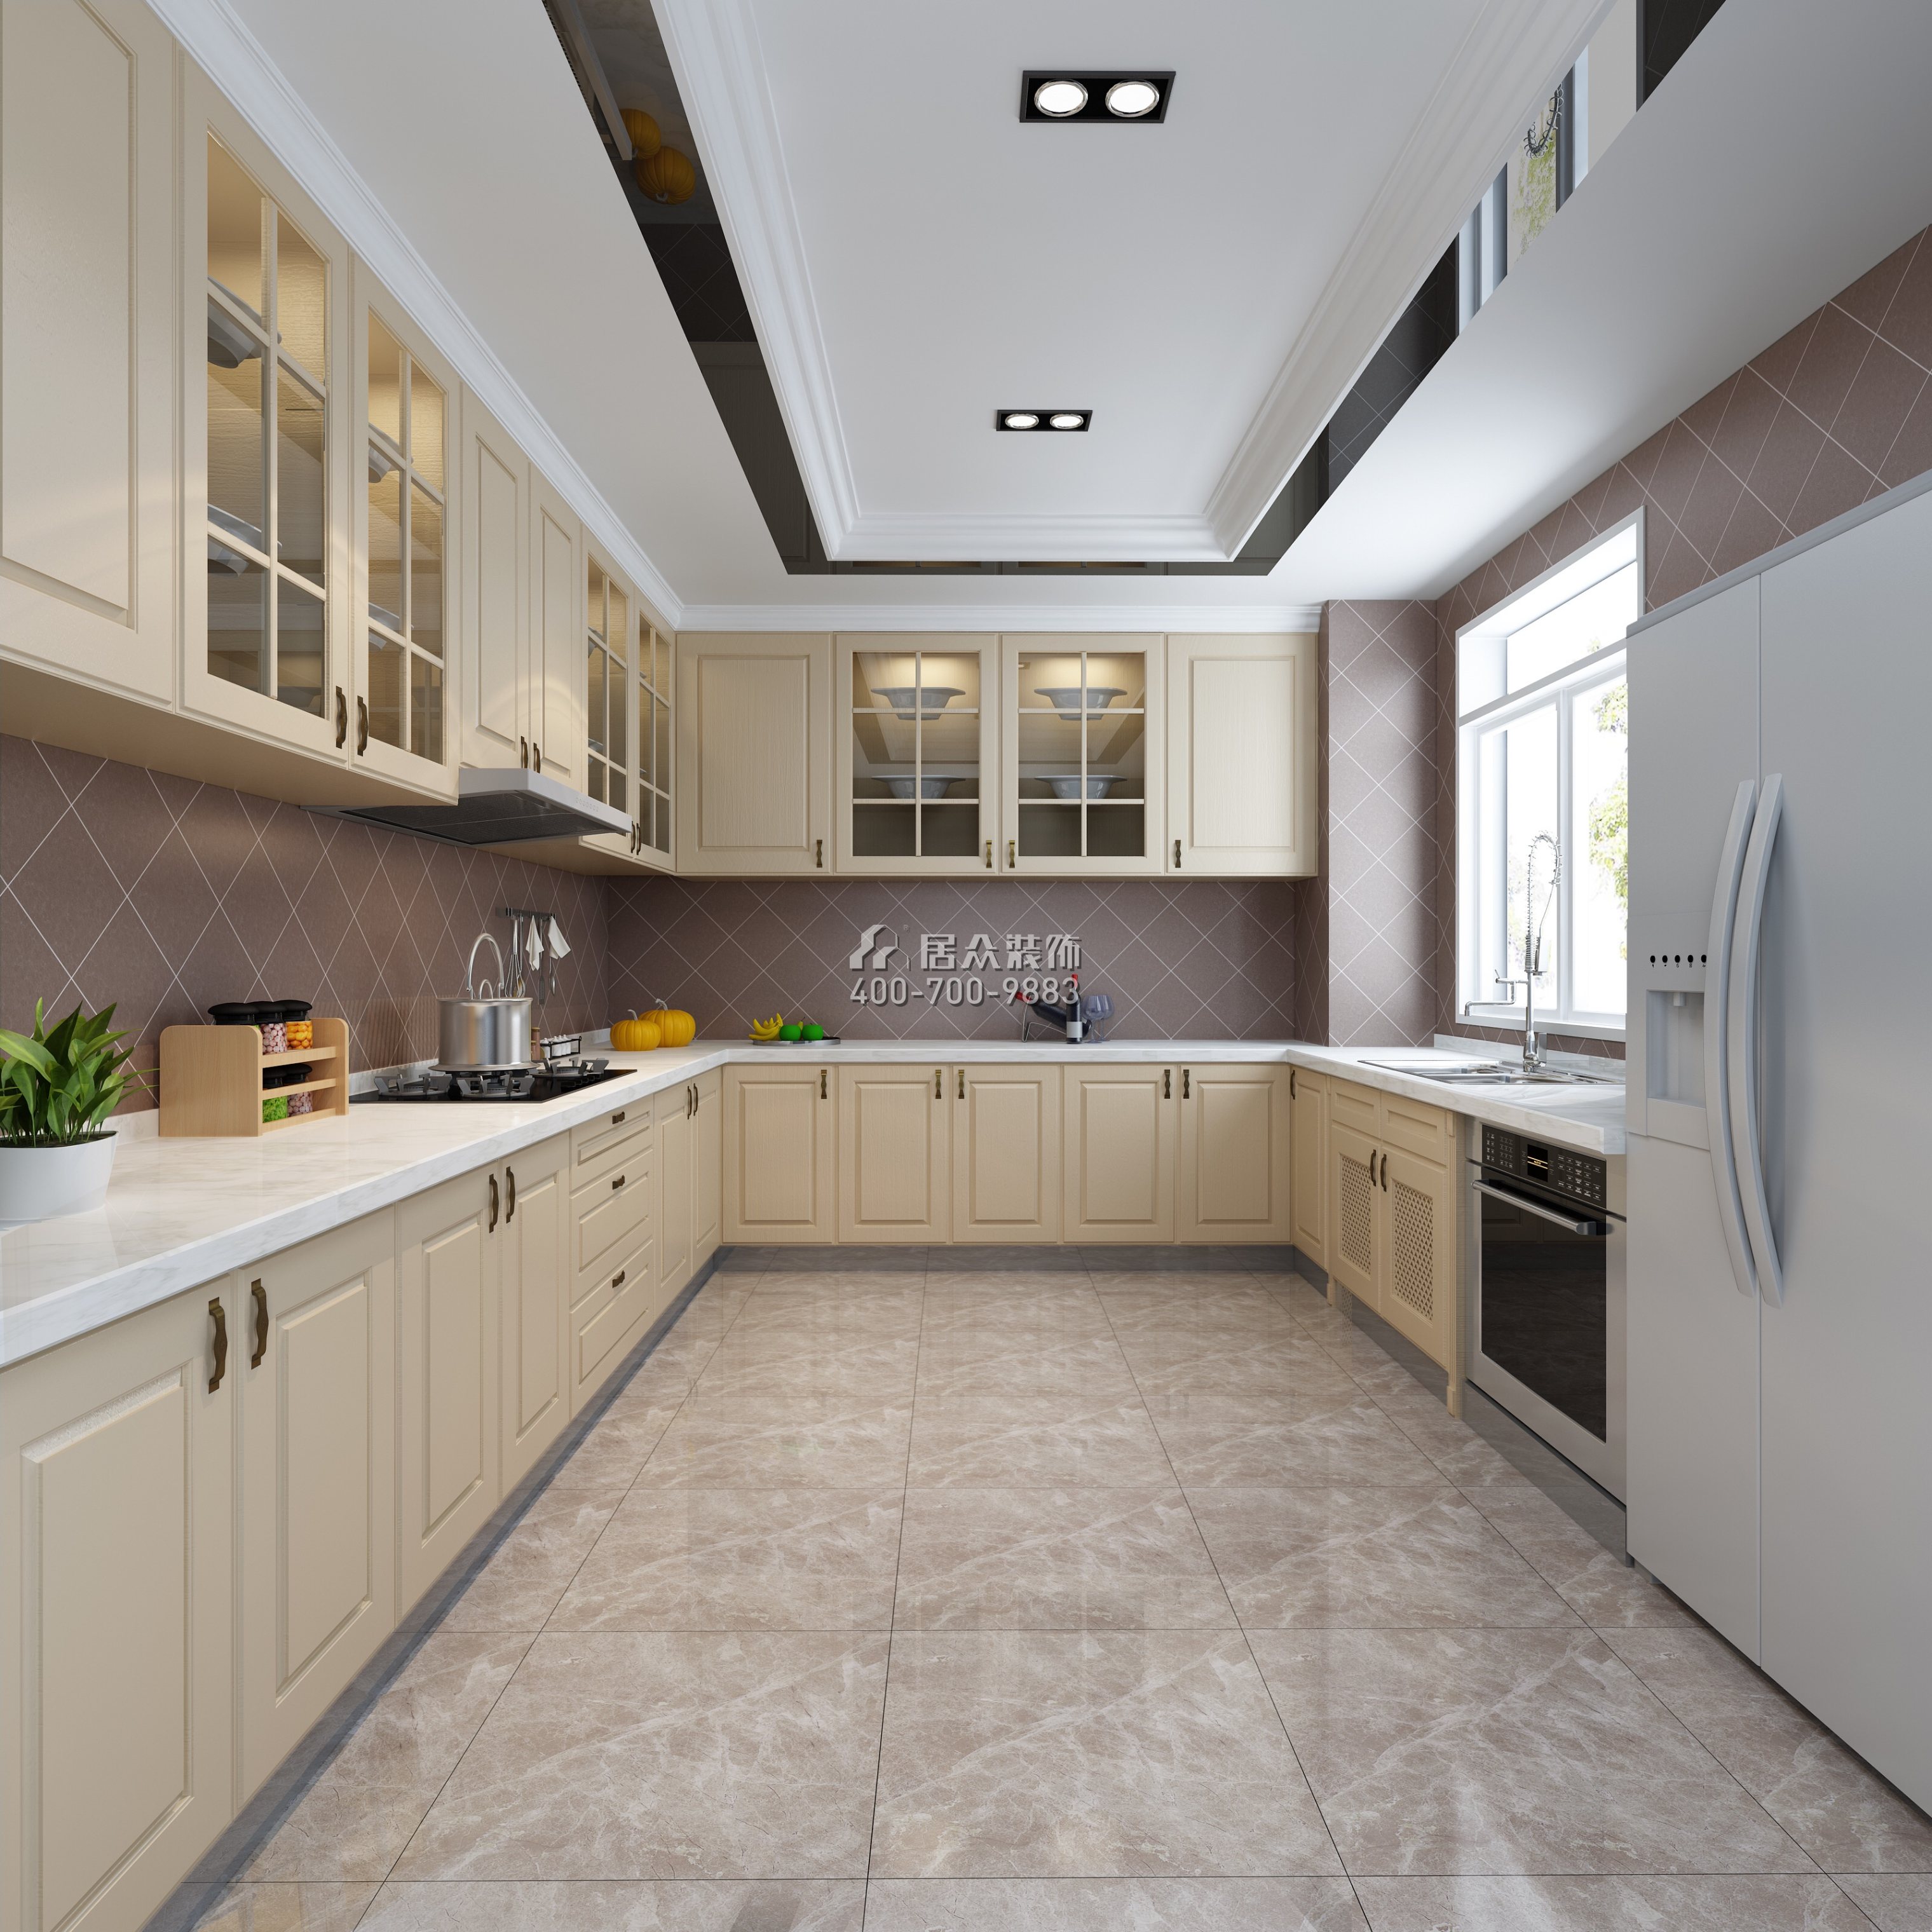 星汇湾320平方米现代简约风格平层户型厨房装修效果图